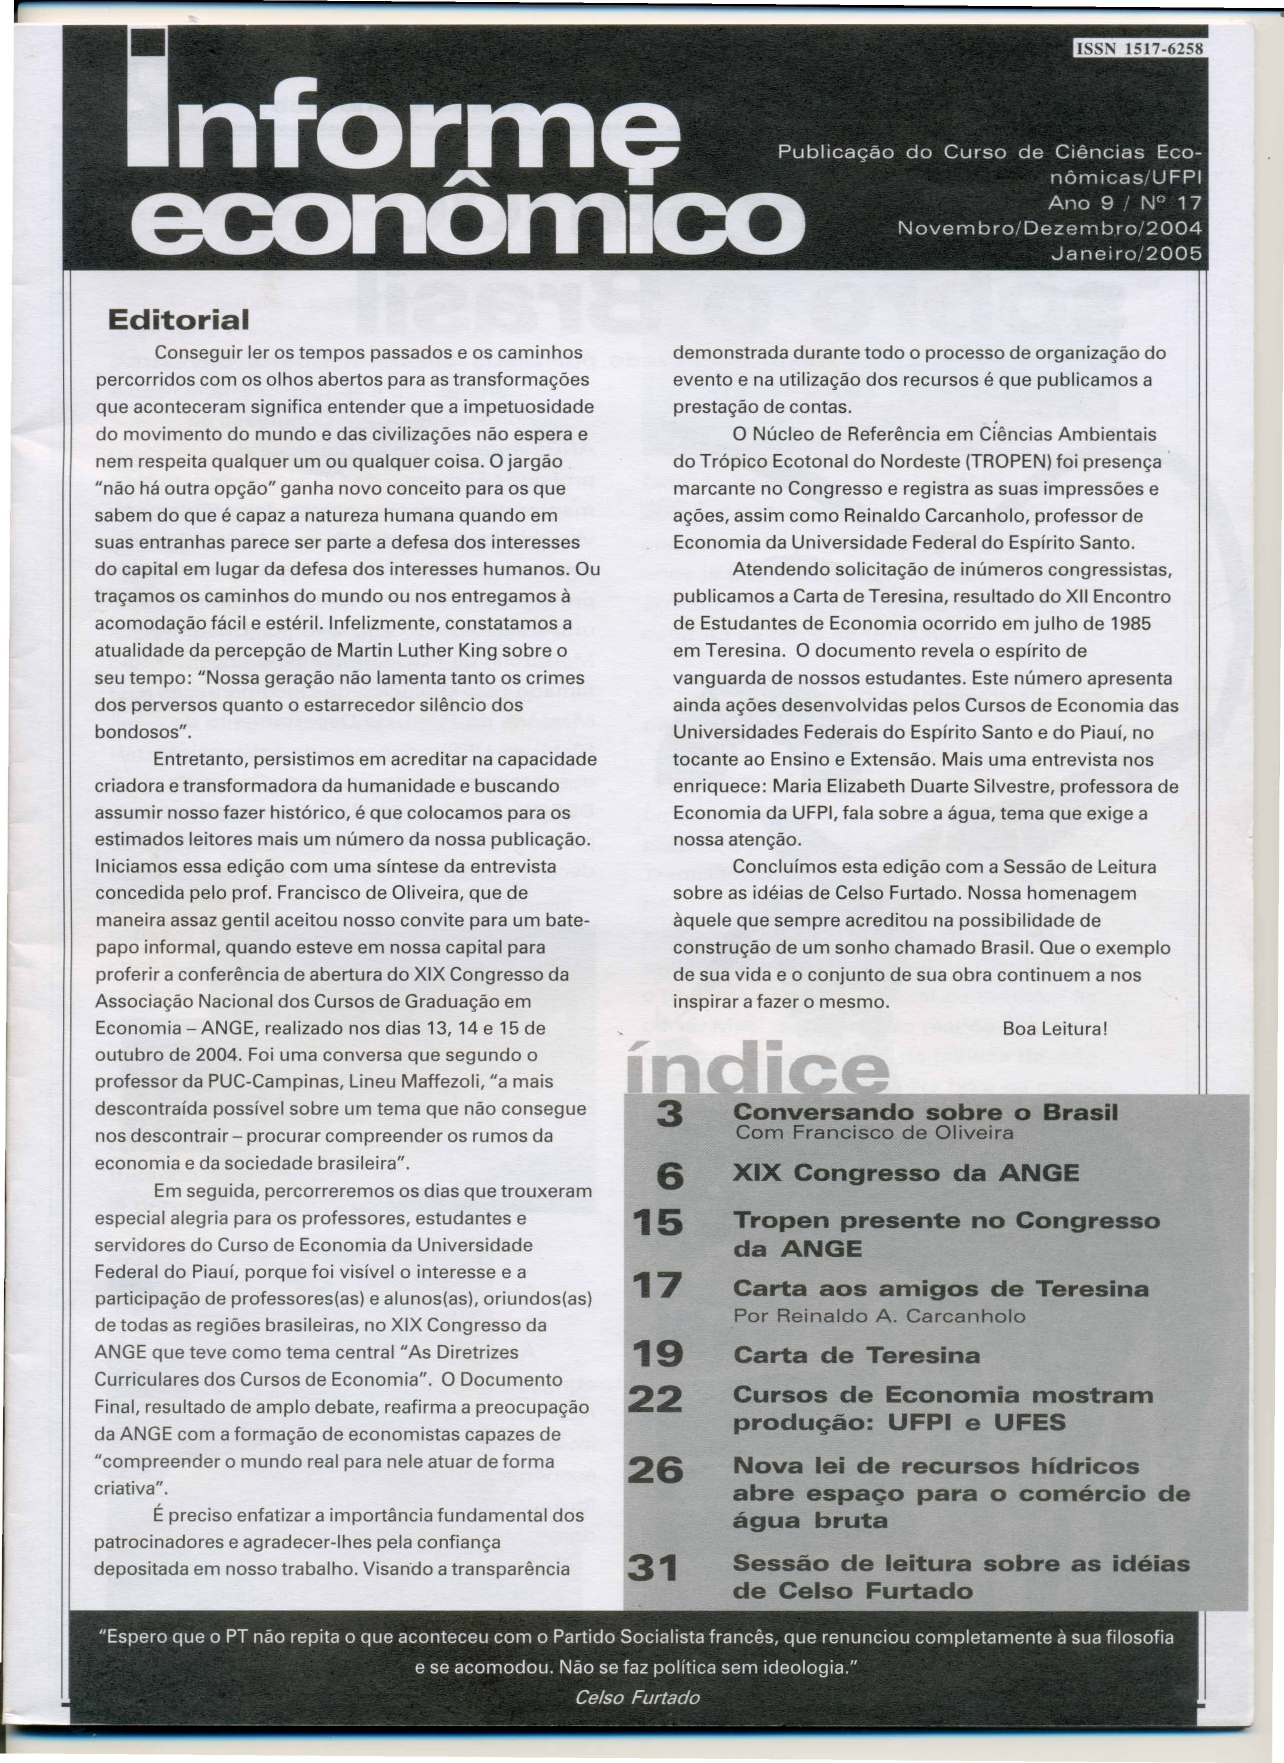 					View Vol. 17 No. 2 (2004): INFORME ECONÔMICO (UFPI), Ano 9, nov./dez. 2009 e jan. 2005
				